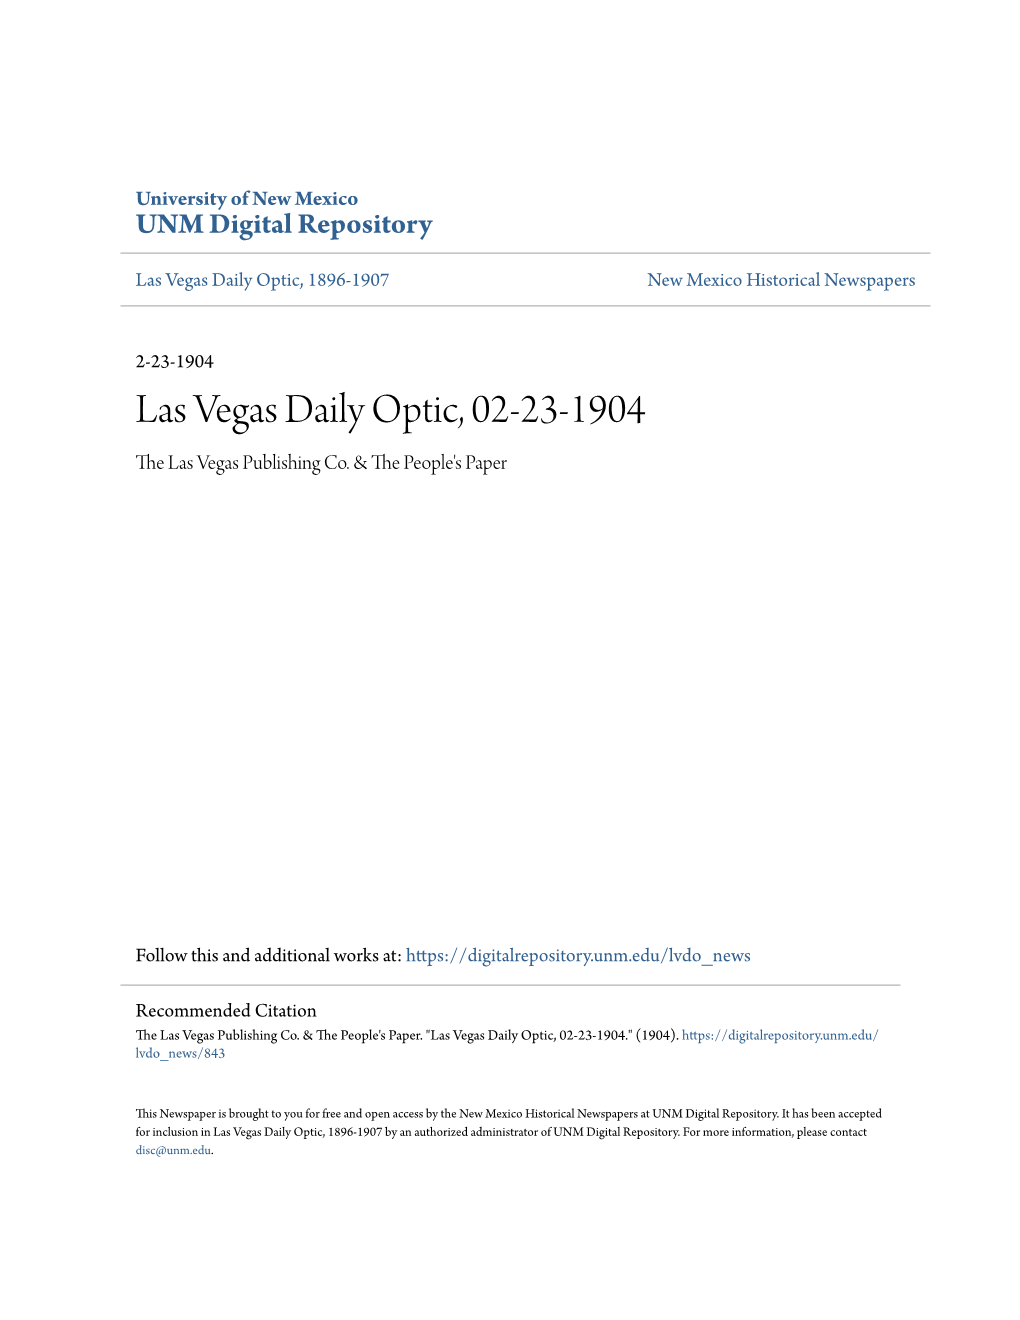 Las Vegas Daily Optic, 02-23-1904 the Las Vegas Publishing Co